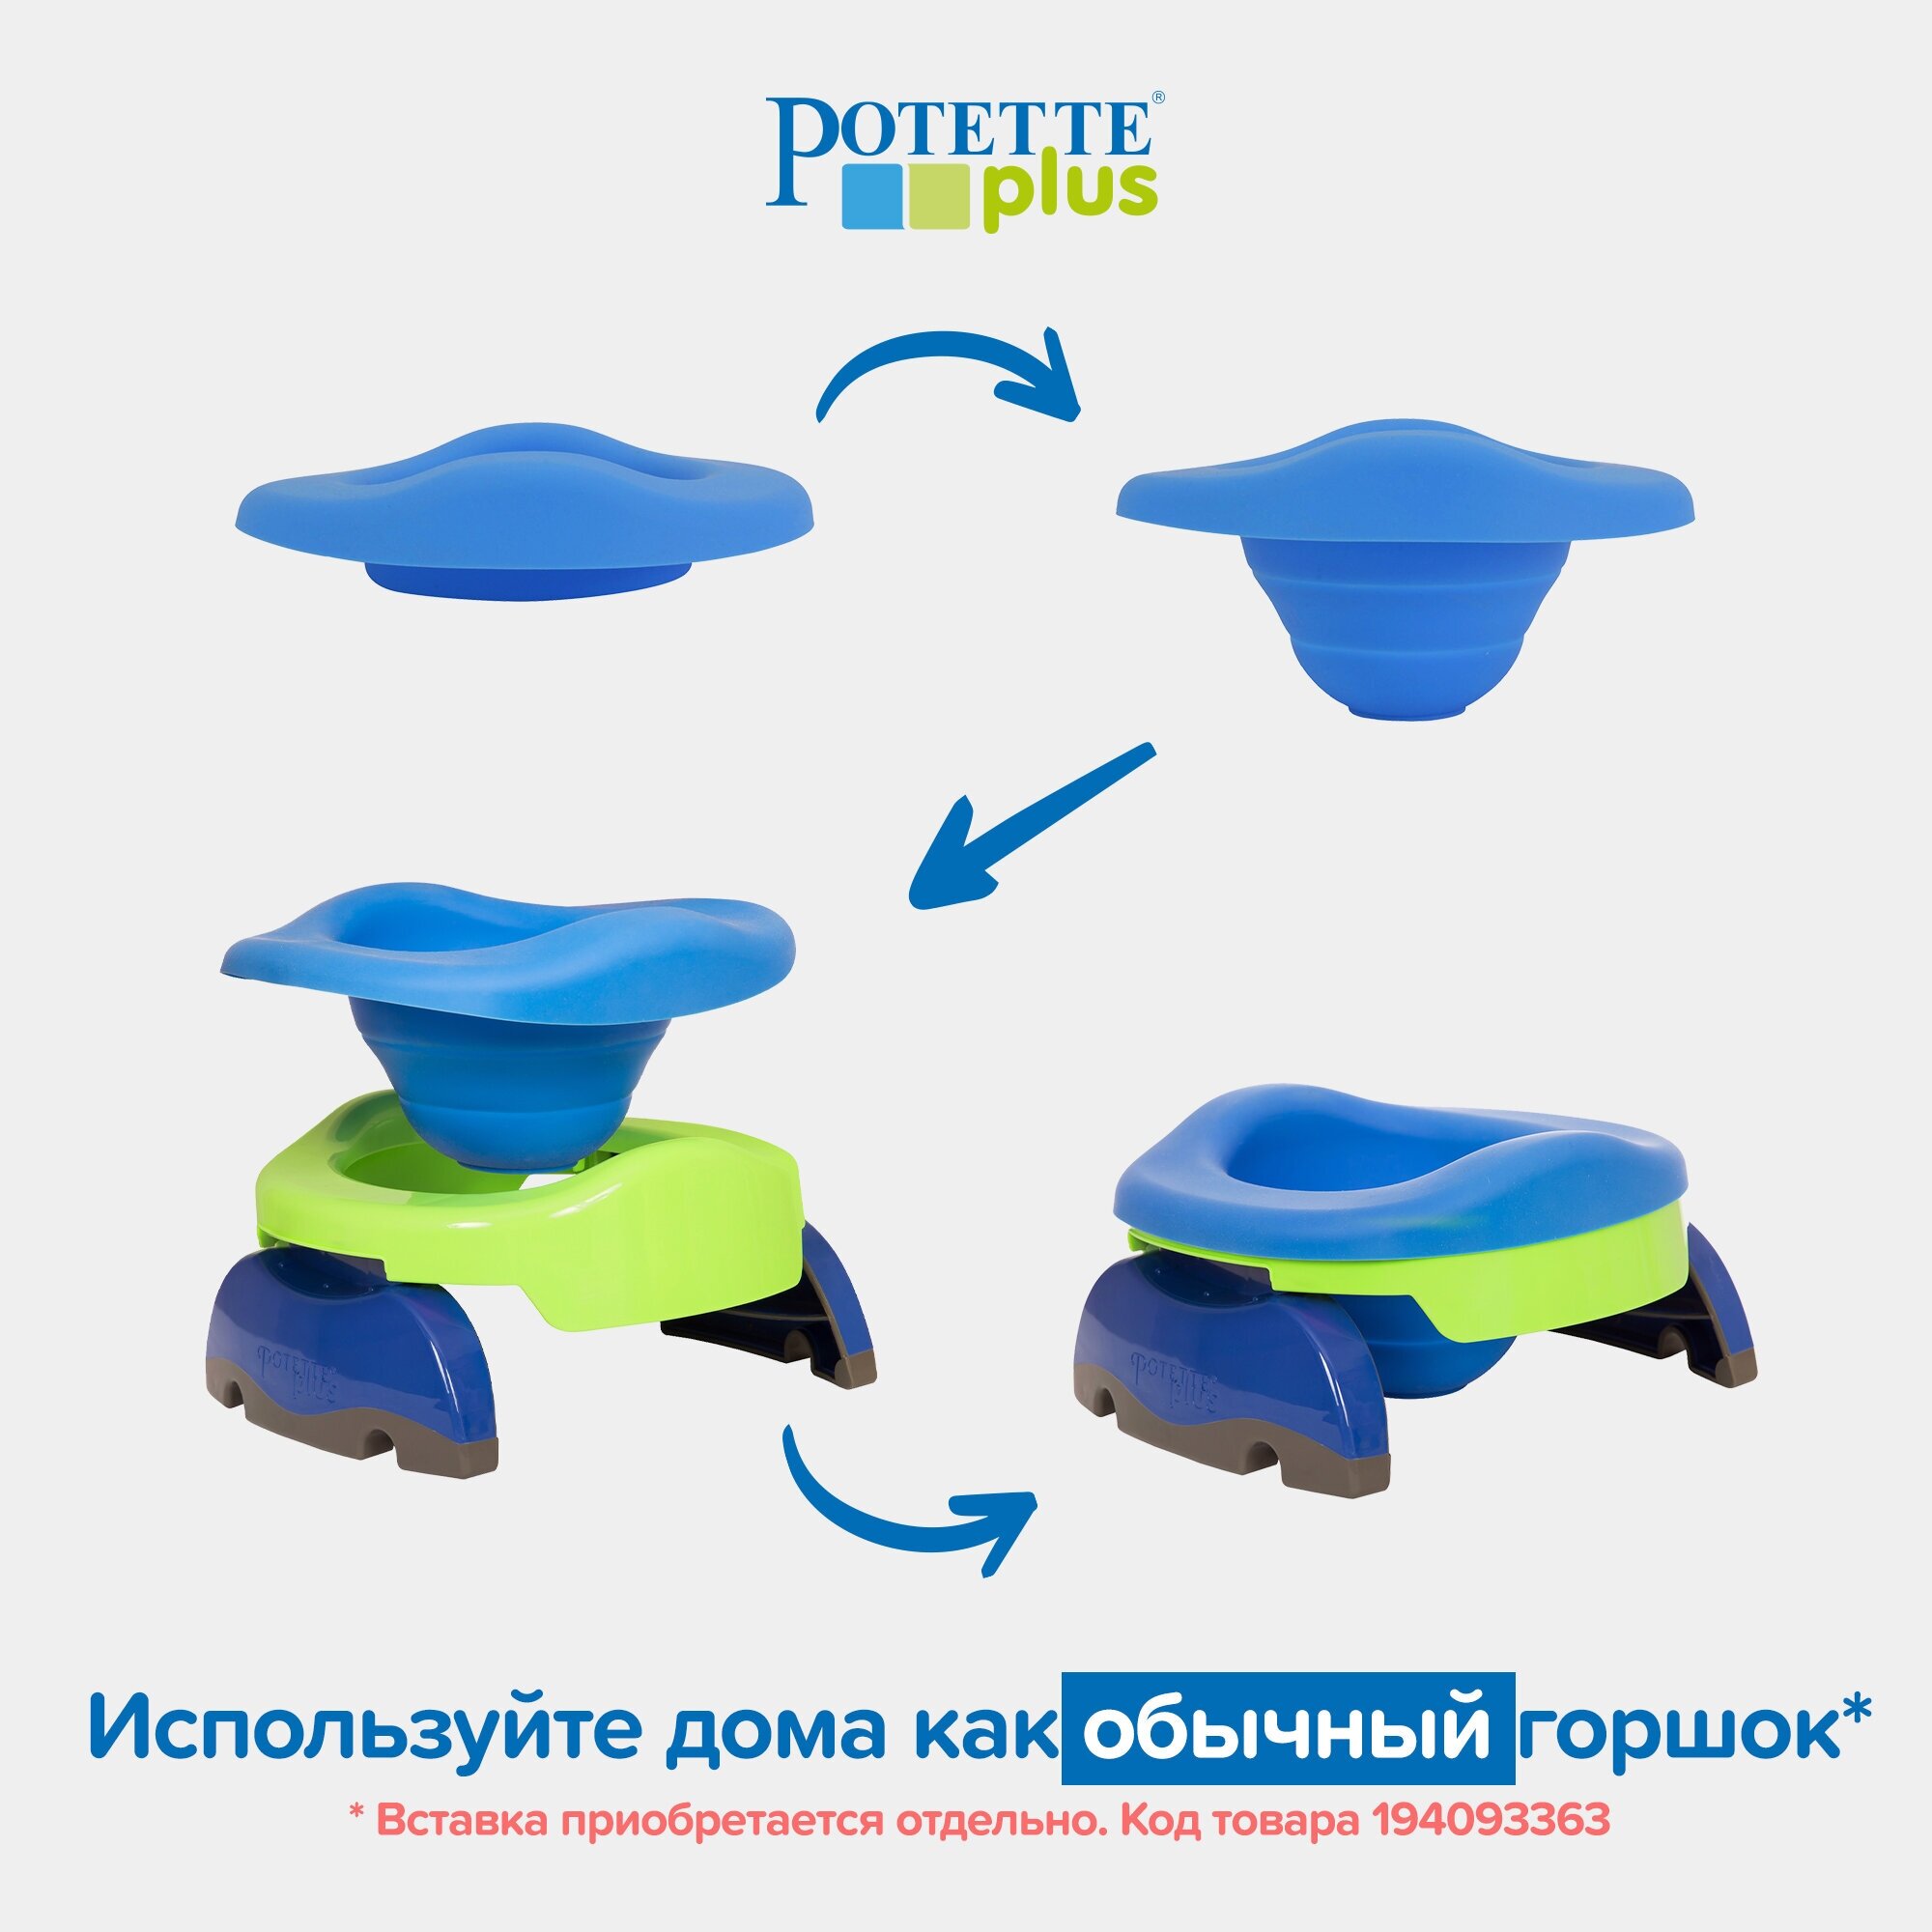 Potette Plus Дорожный складной горшок + 1 одноразовый пакет, зелёно-голубой - фото №20